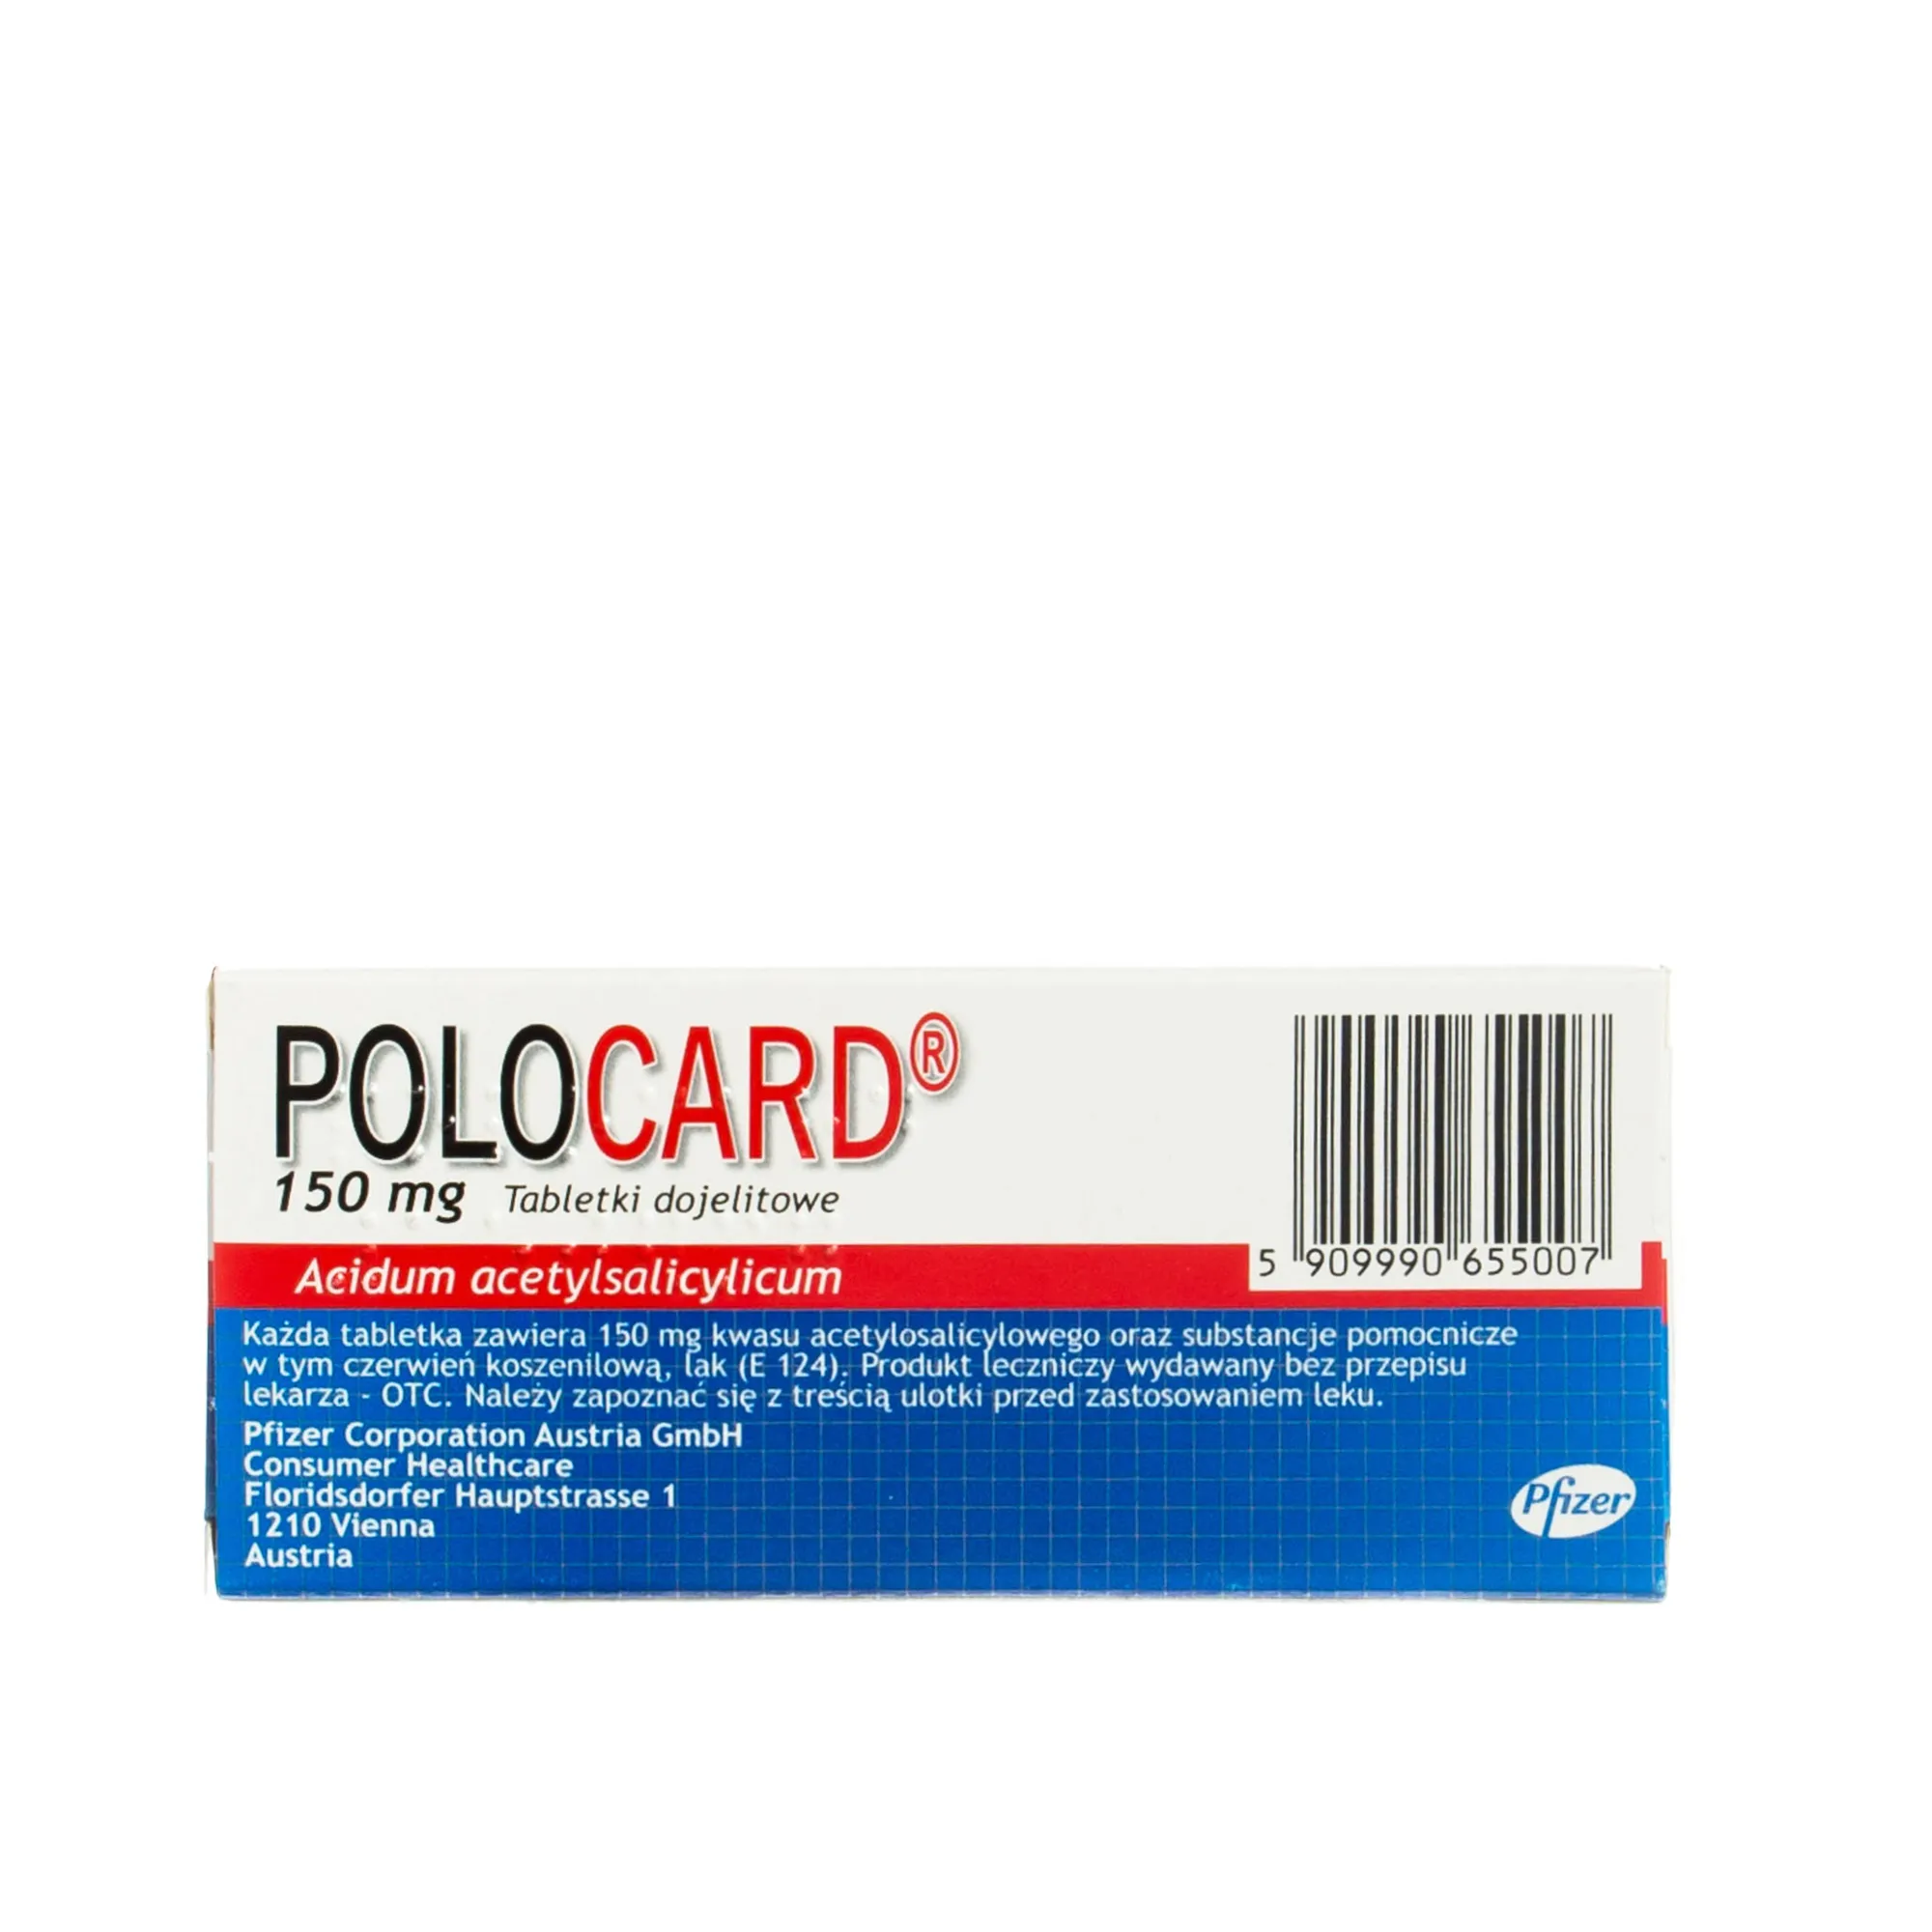 Polocard 150 mg, 60 tabletek dojelitowych 